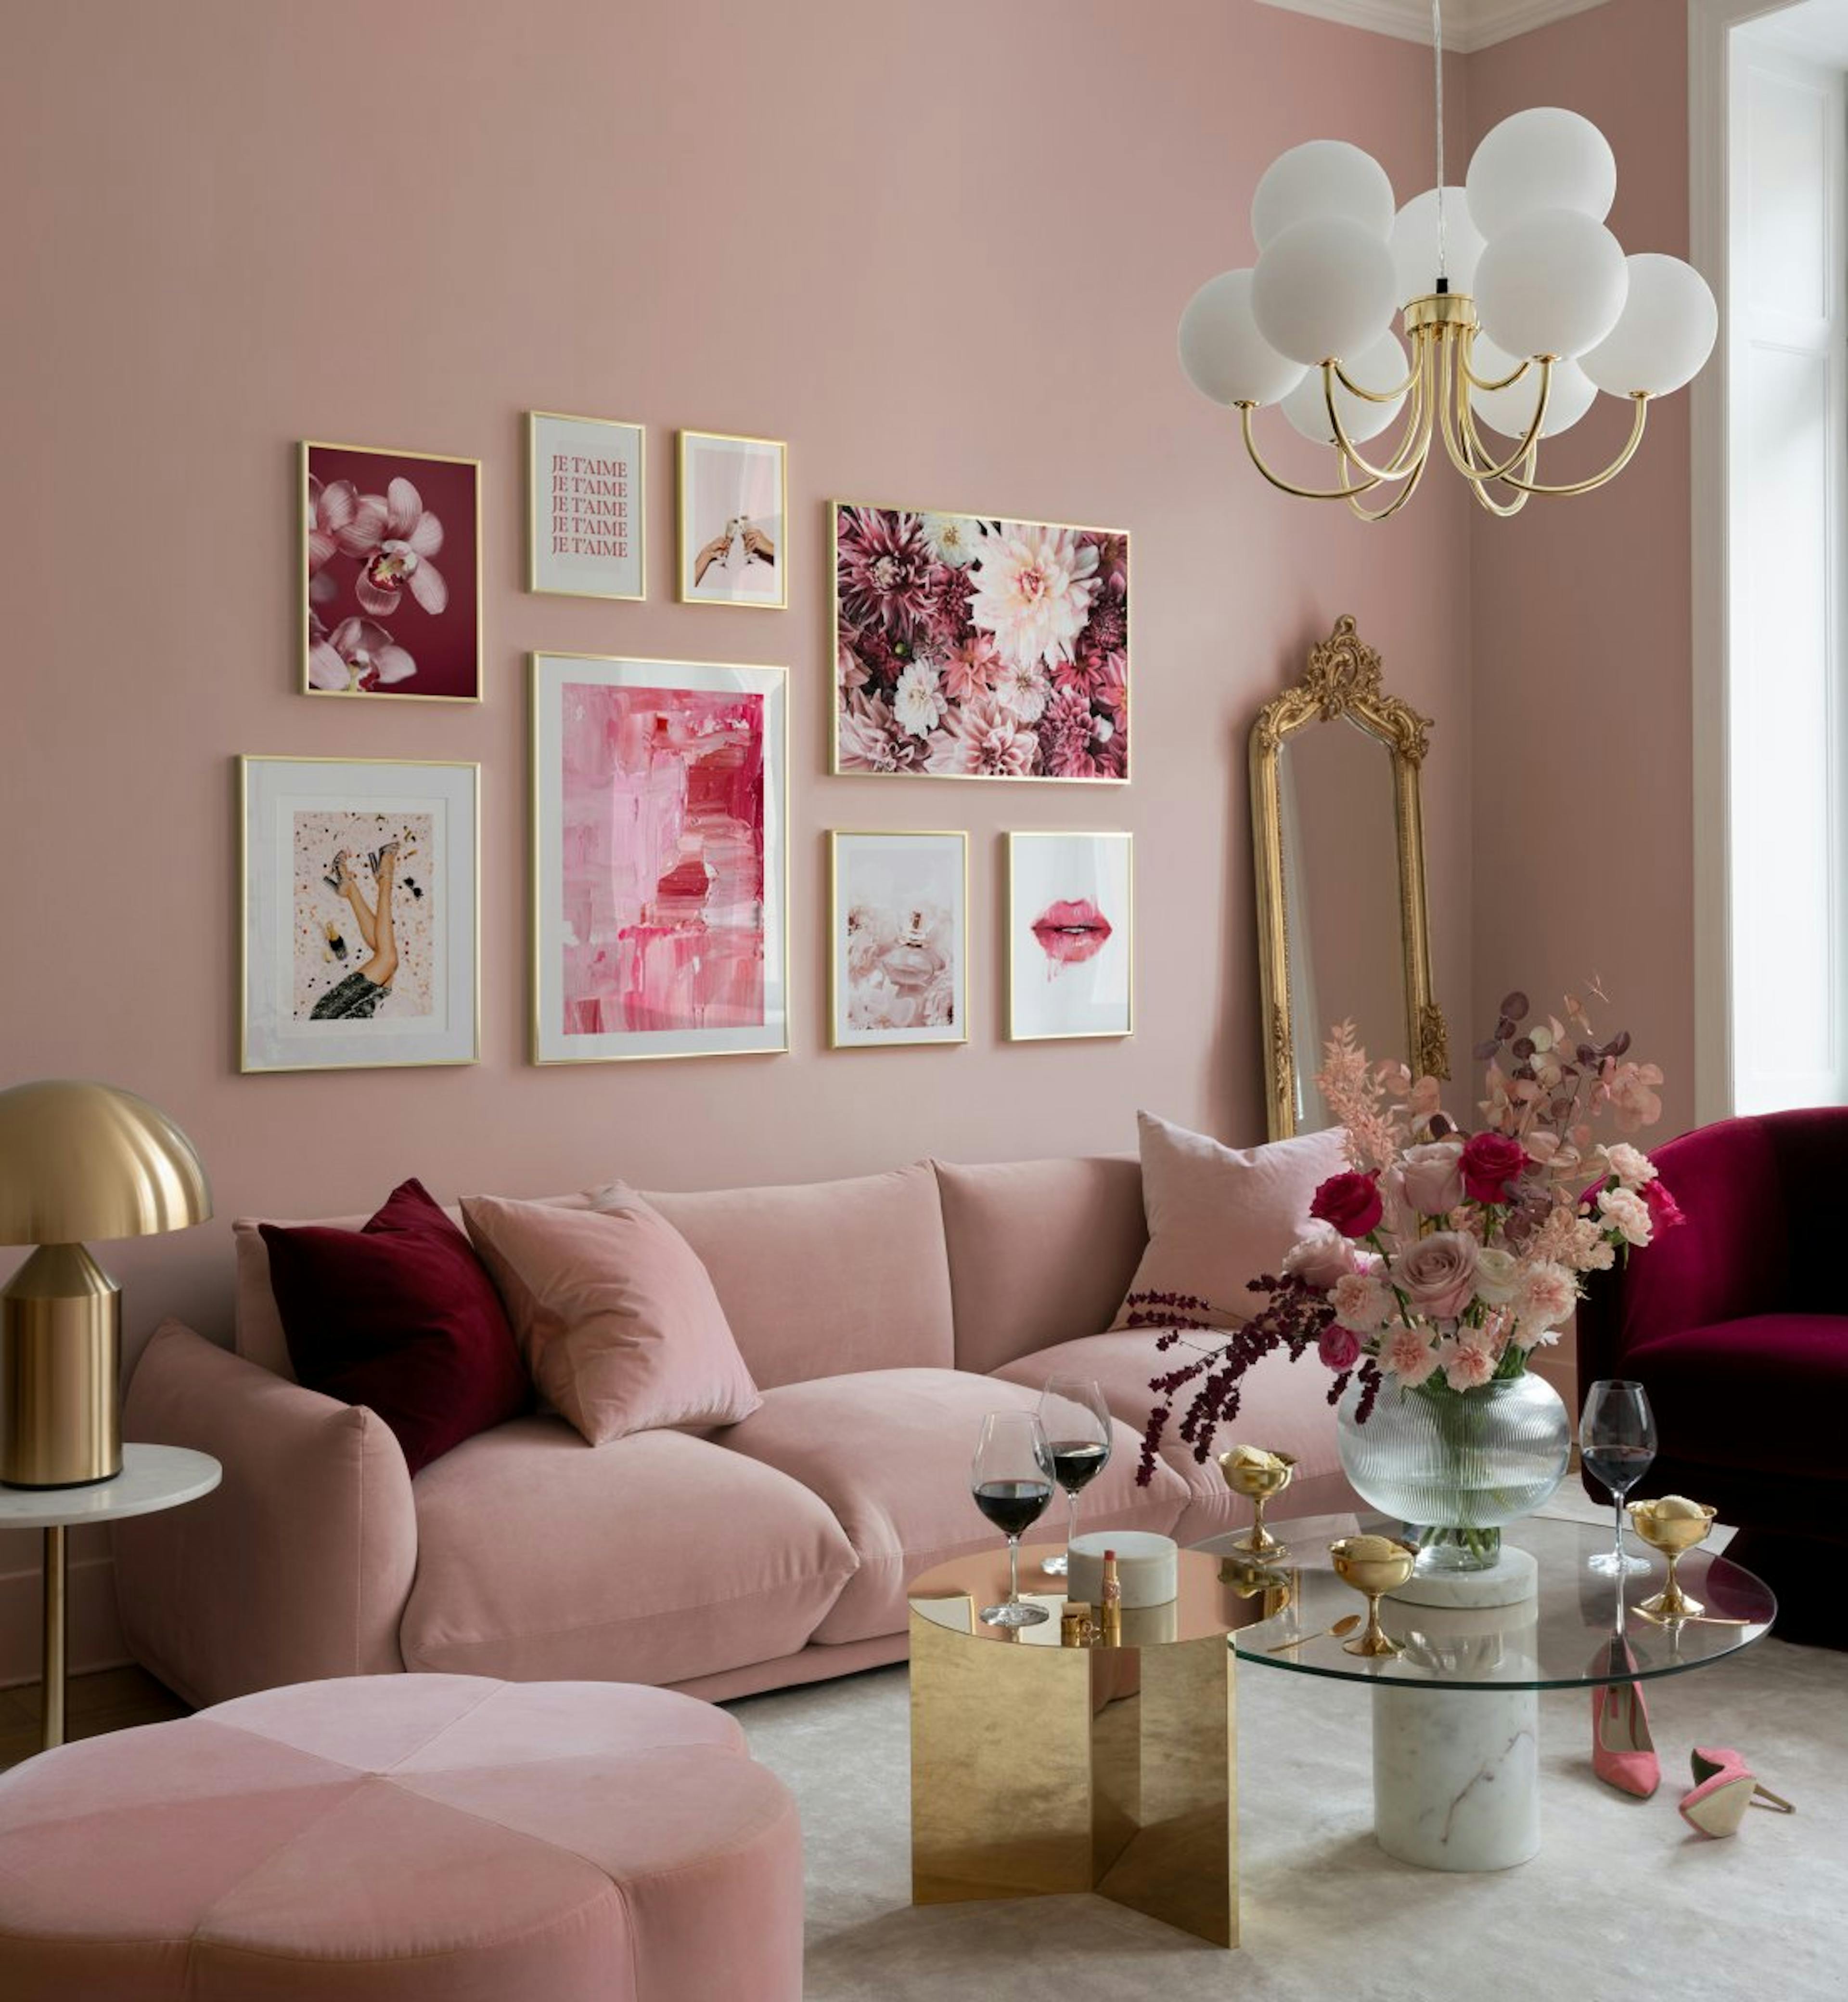 Stampe e citazioni girl power in rosa per il soggiorno